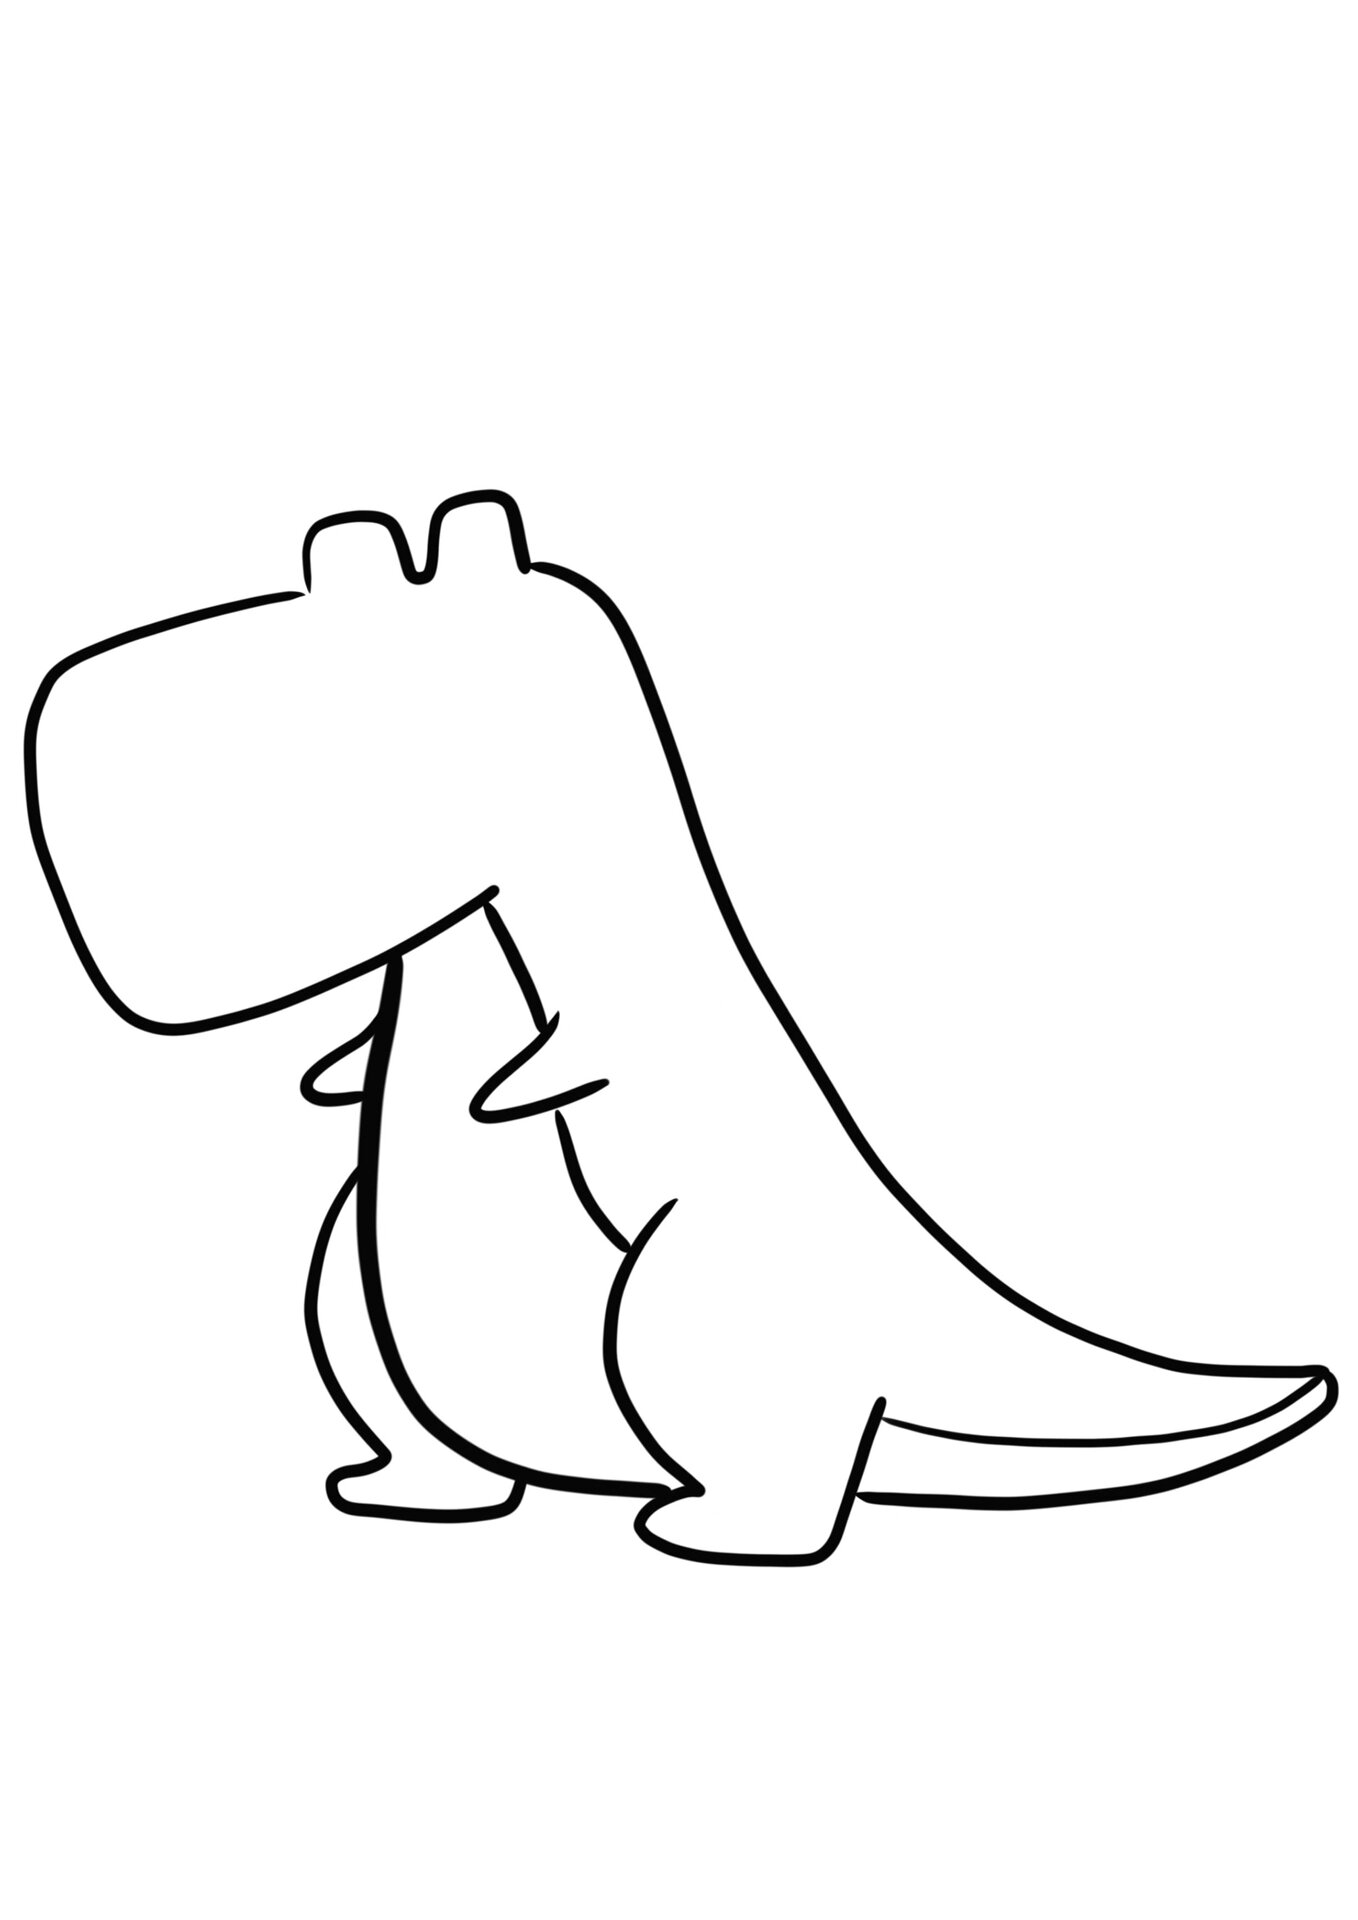 简笔画教程分享 恐龙